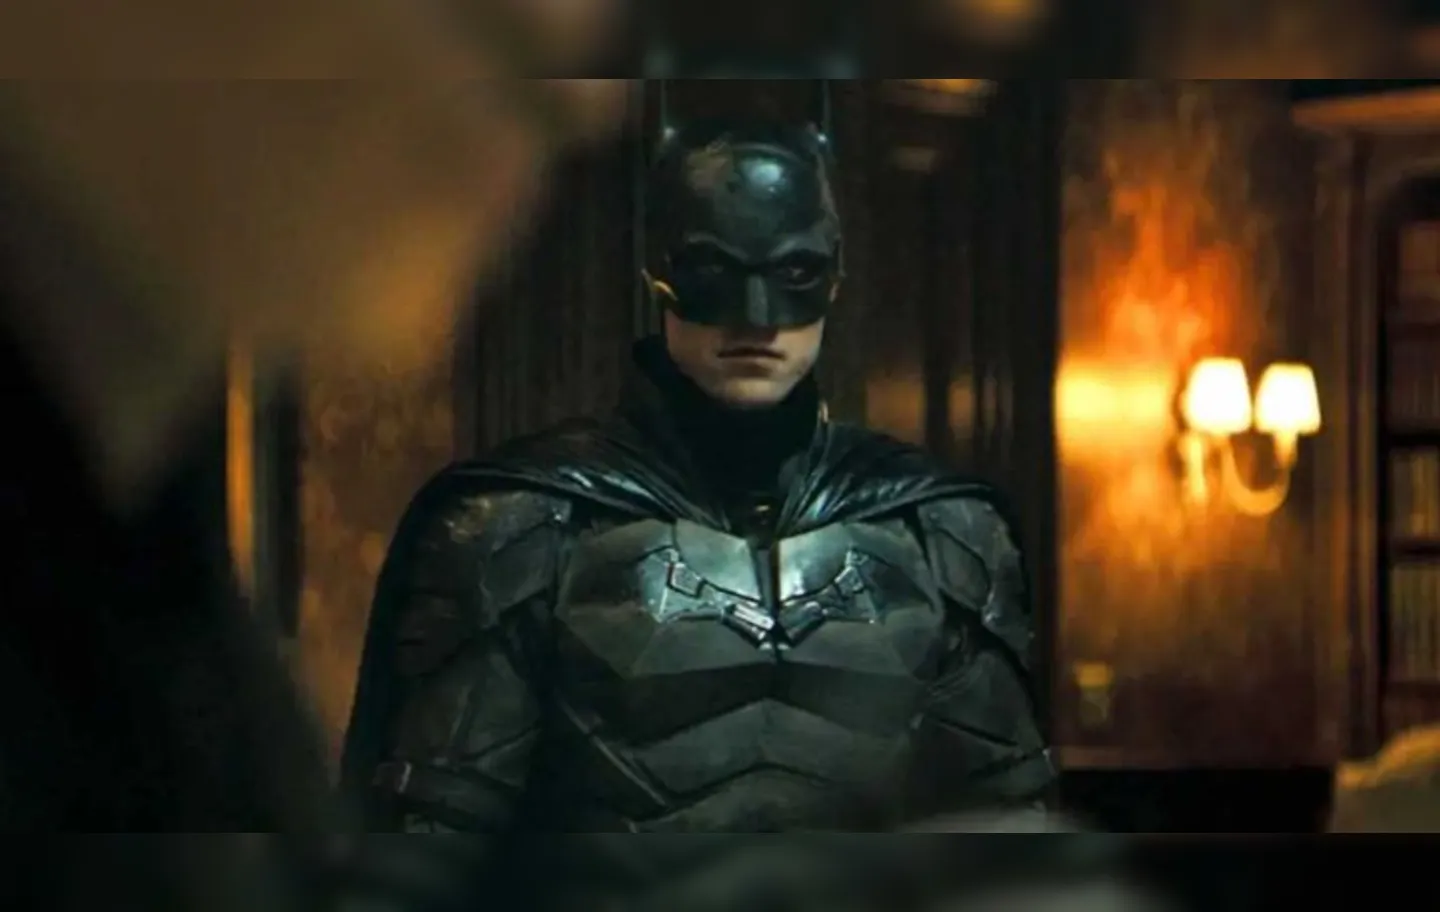 Evento trará novidades sobre conteúdos de super-heróis da DC, incluindo o novo filme "The Batman" | Foto: Divulgação